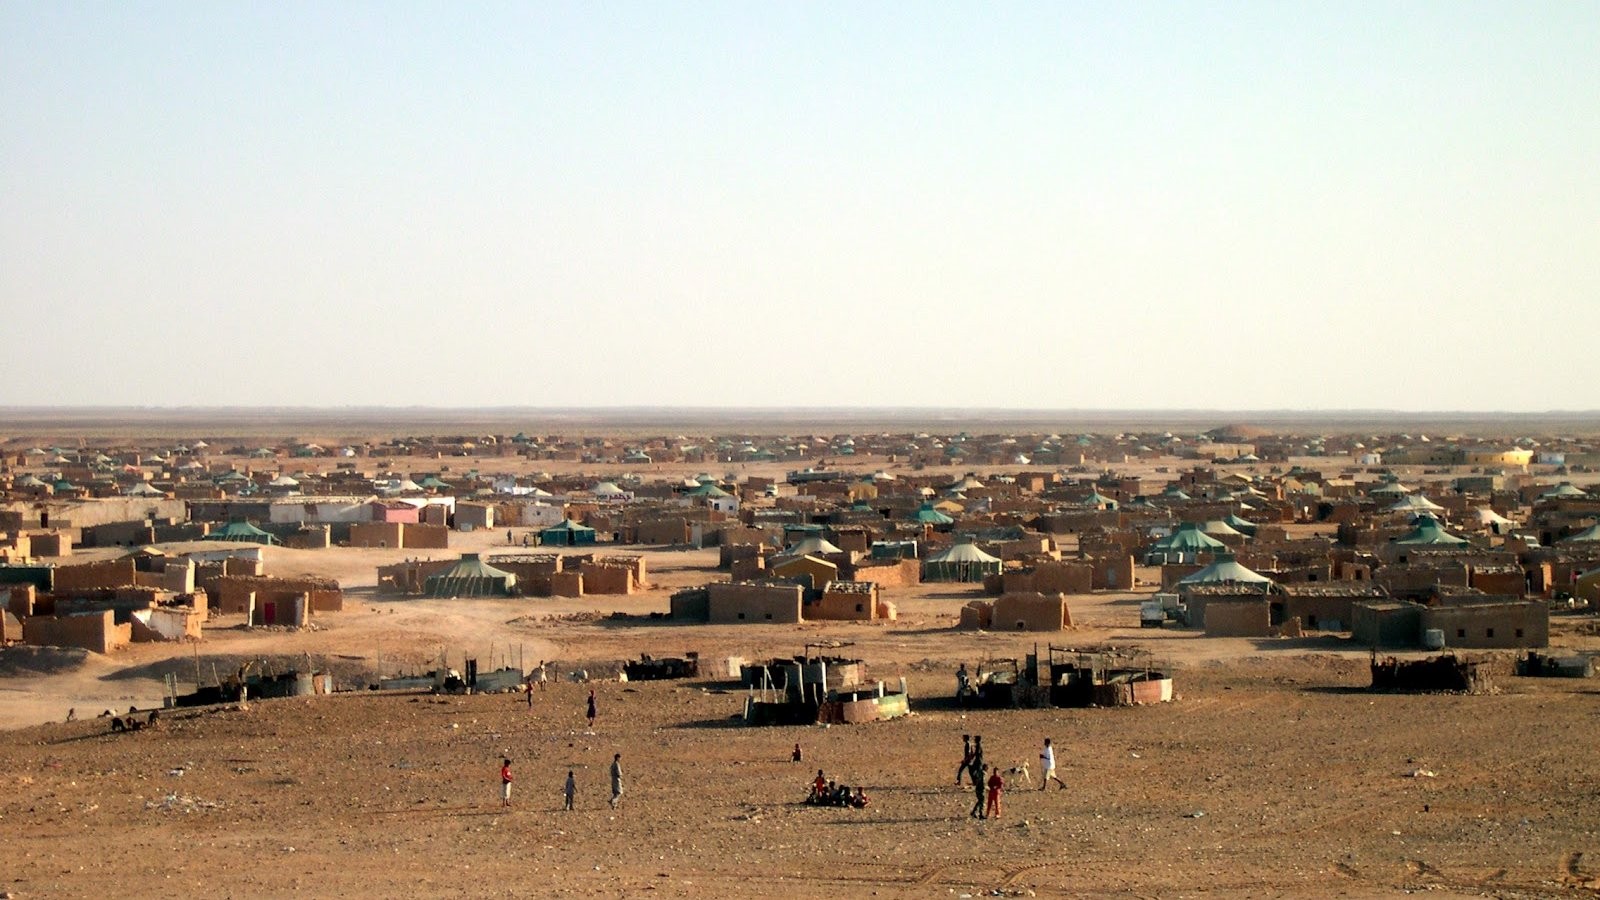 Les séquestrés de Tindouf, des prisonniers à ciel ouvert